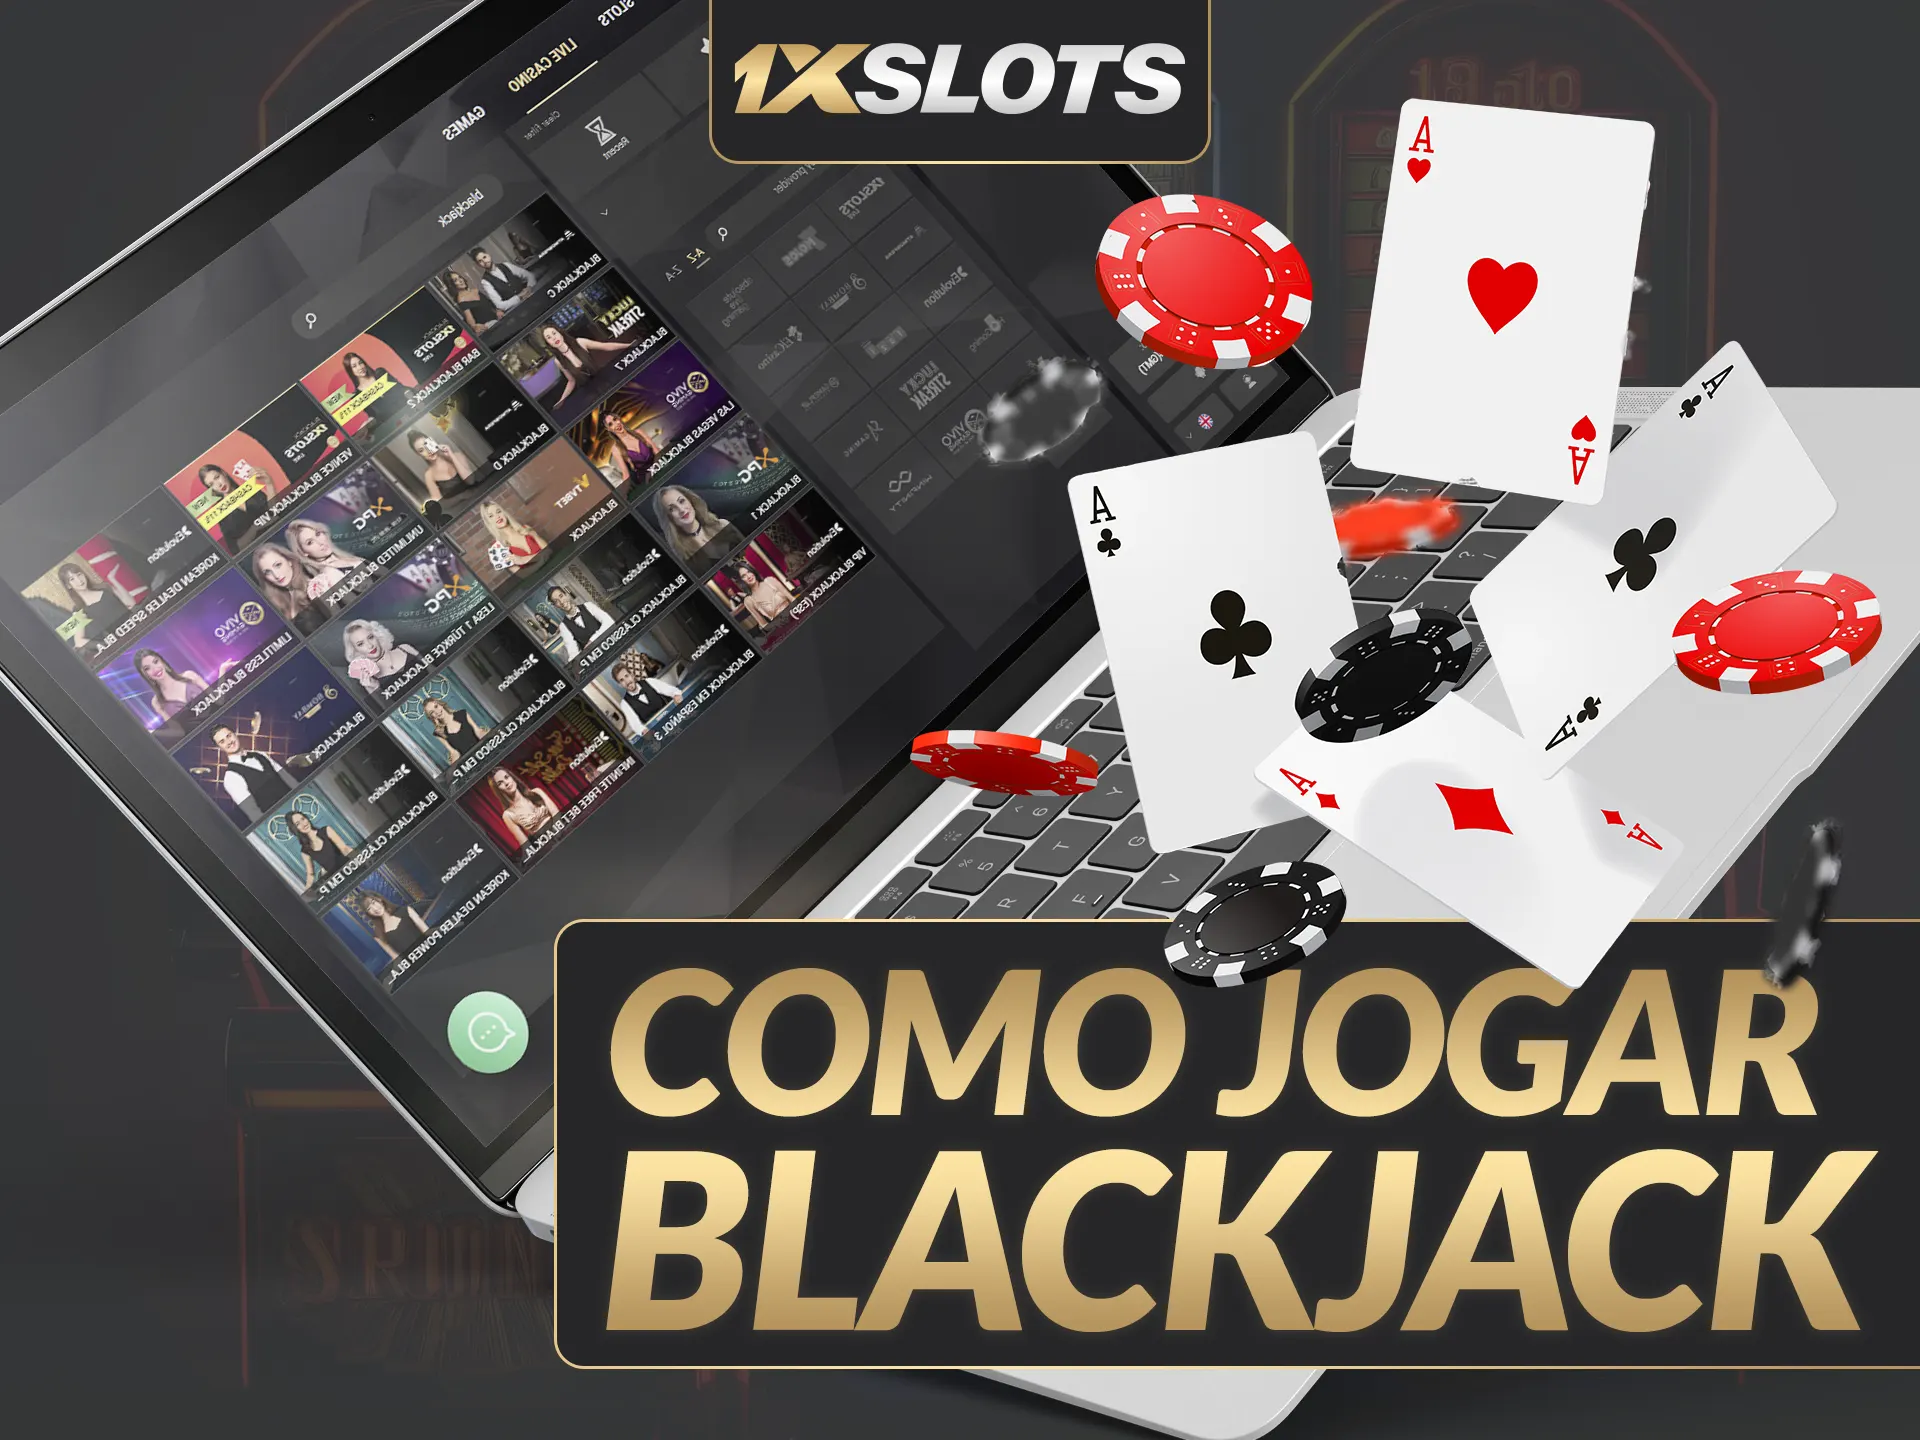 Aprenda a jogar Blackjack nos cassinos online da 1xSlots.